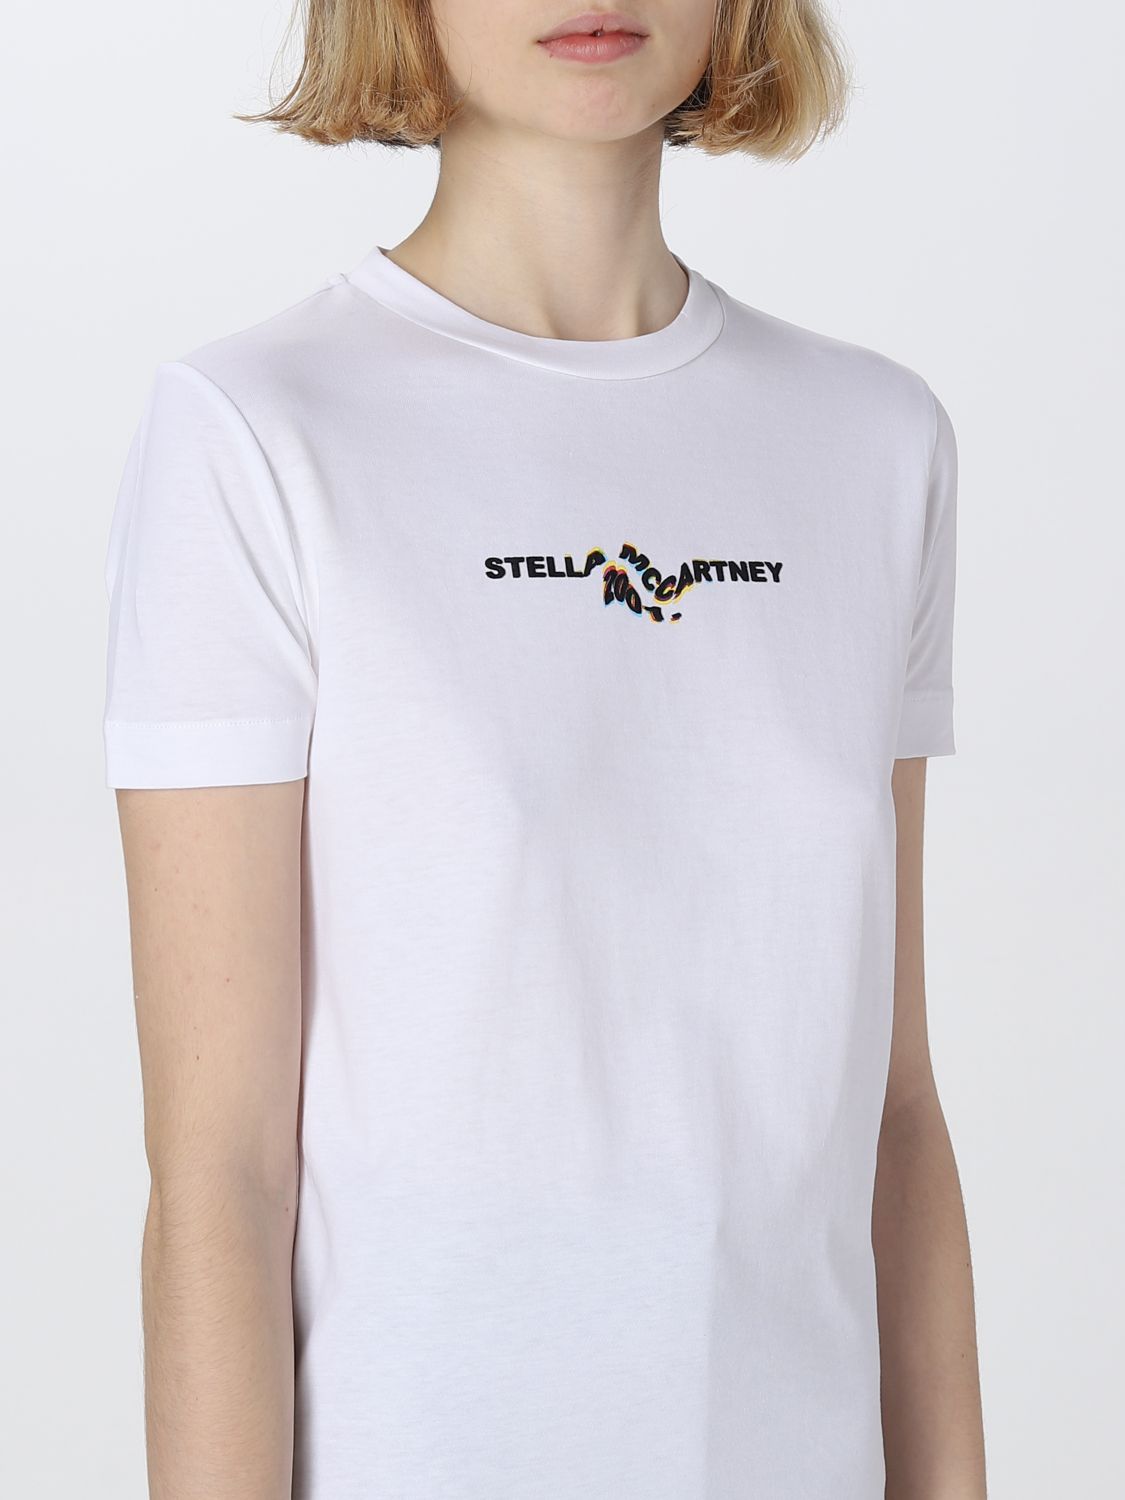 キャンペーンもお見逃しなく ステラマッカートニー Tシャツ egypticf 